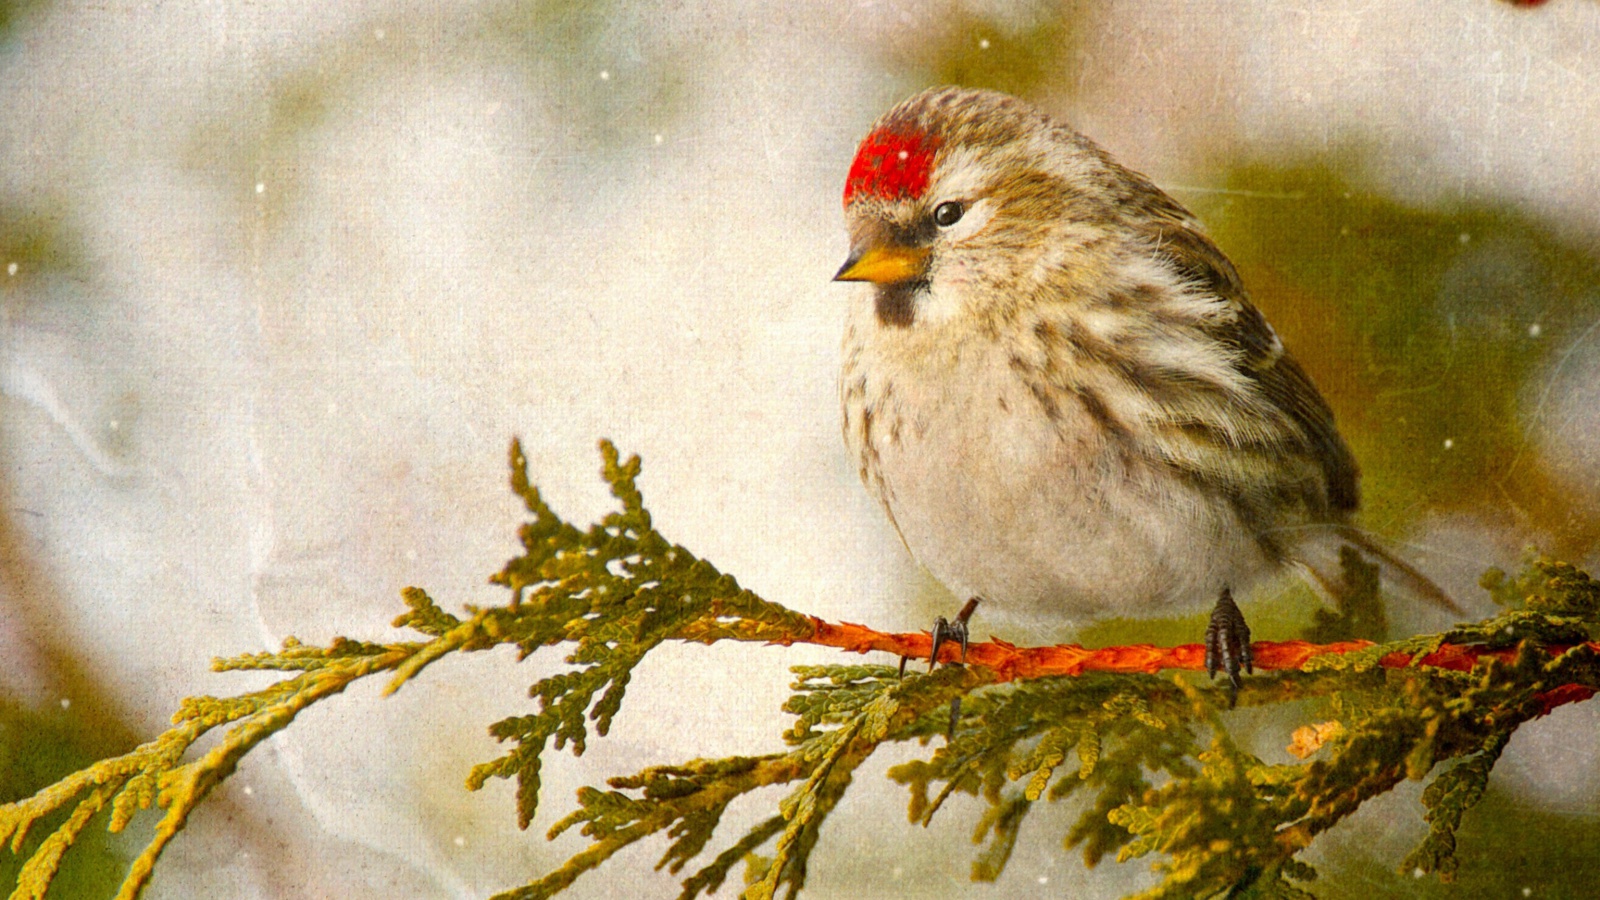 Redpoll bird screenshot #1 1600x900